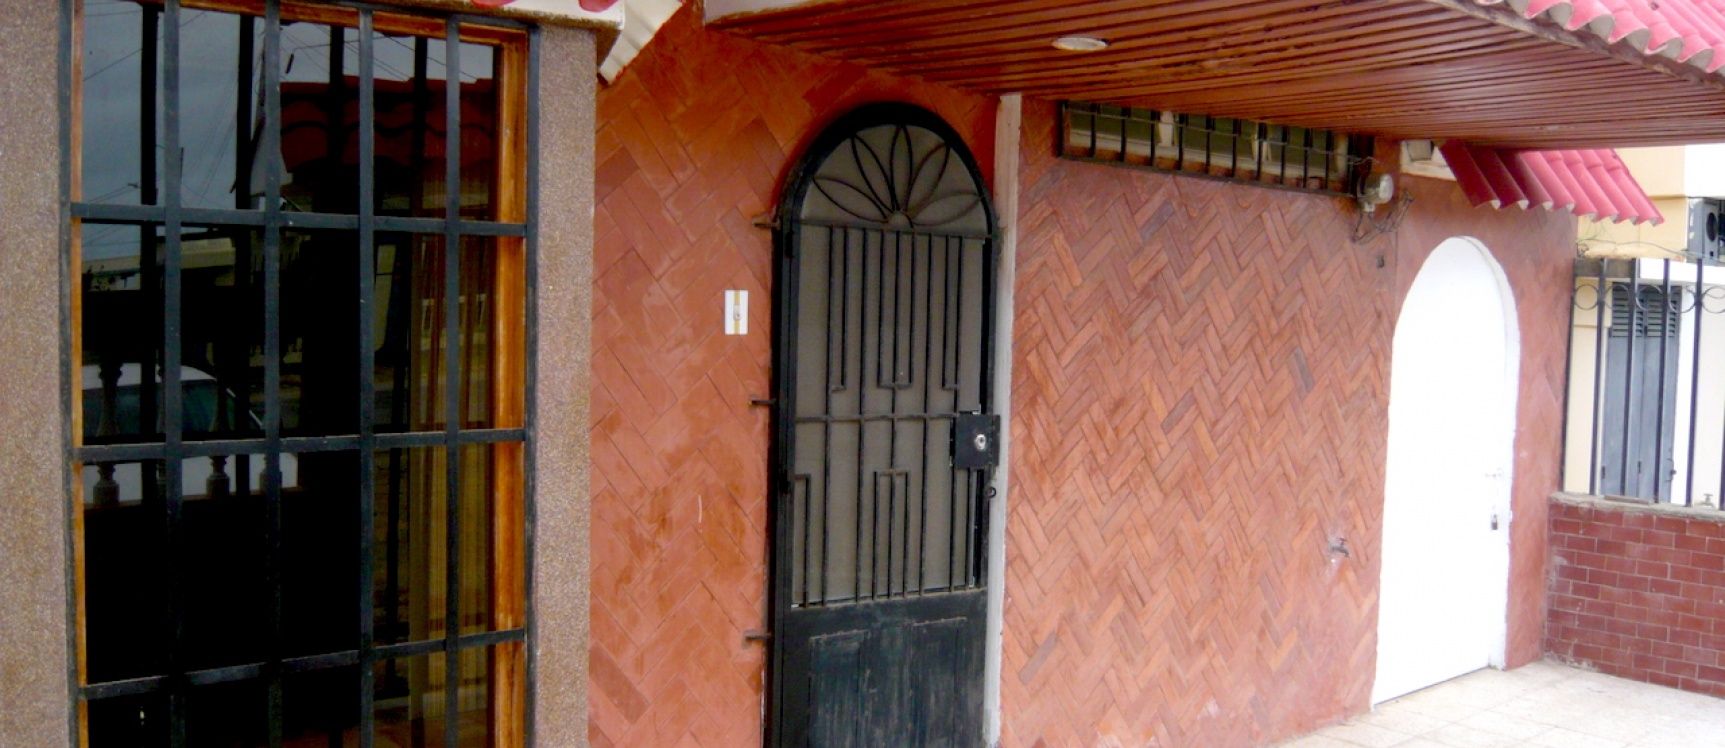 GeoBienes - Casa de venta en Salinas ubicada Las Dunas - Plusvalia Guayaquil Casas de venta y alquiler Inmobiliaria Ecuador